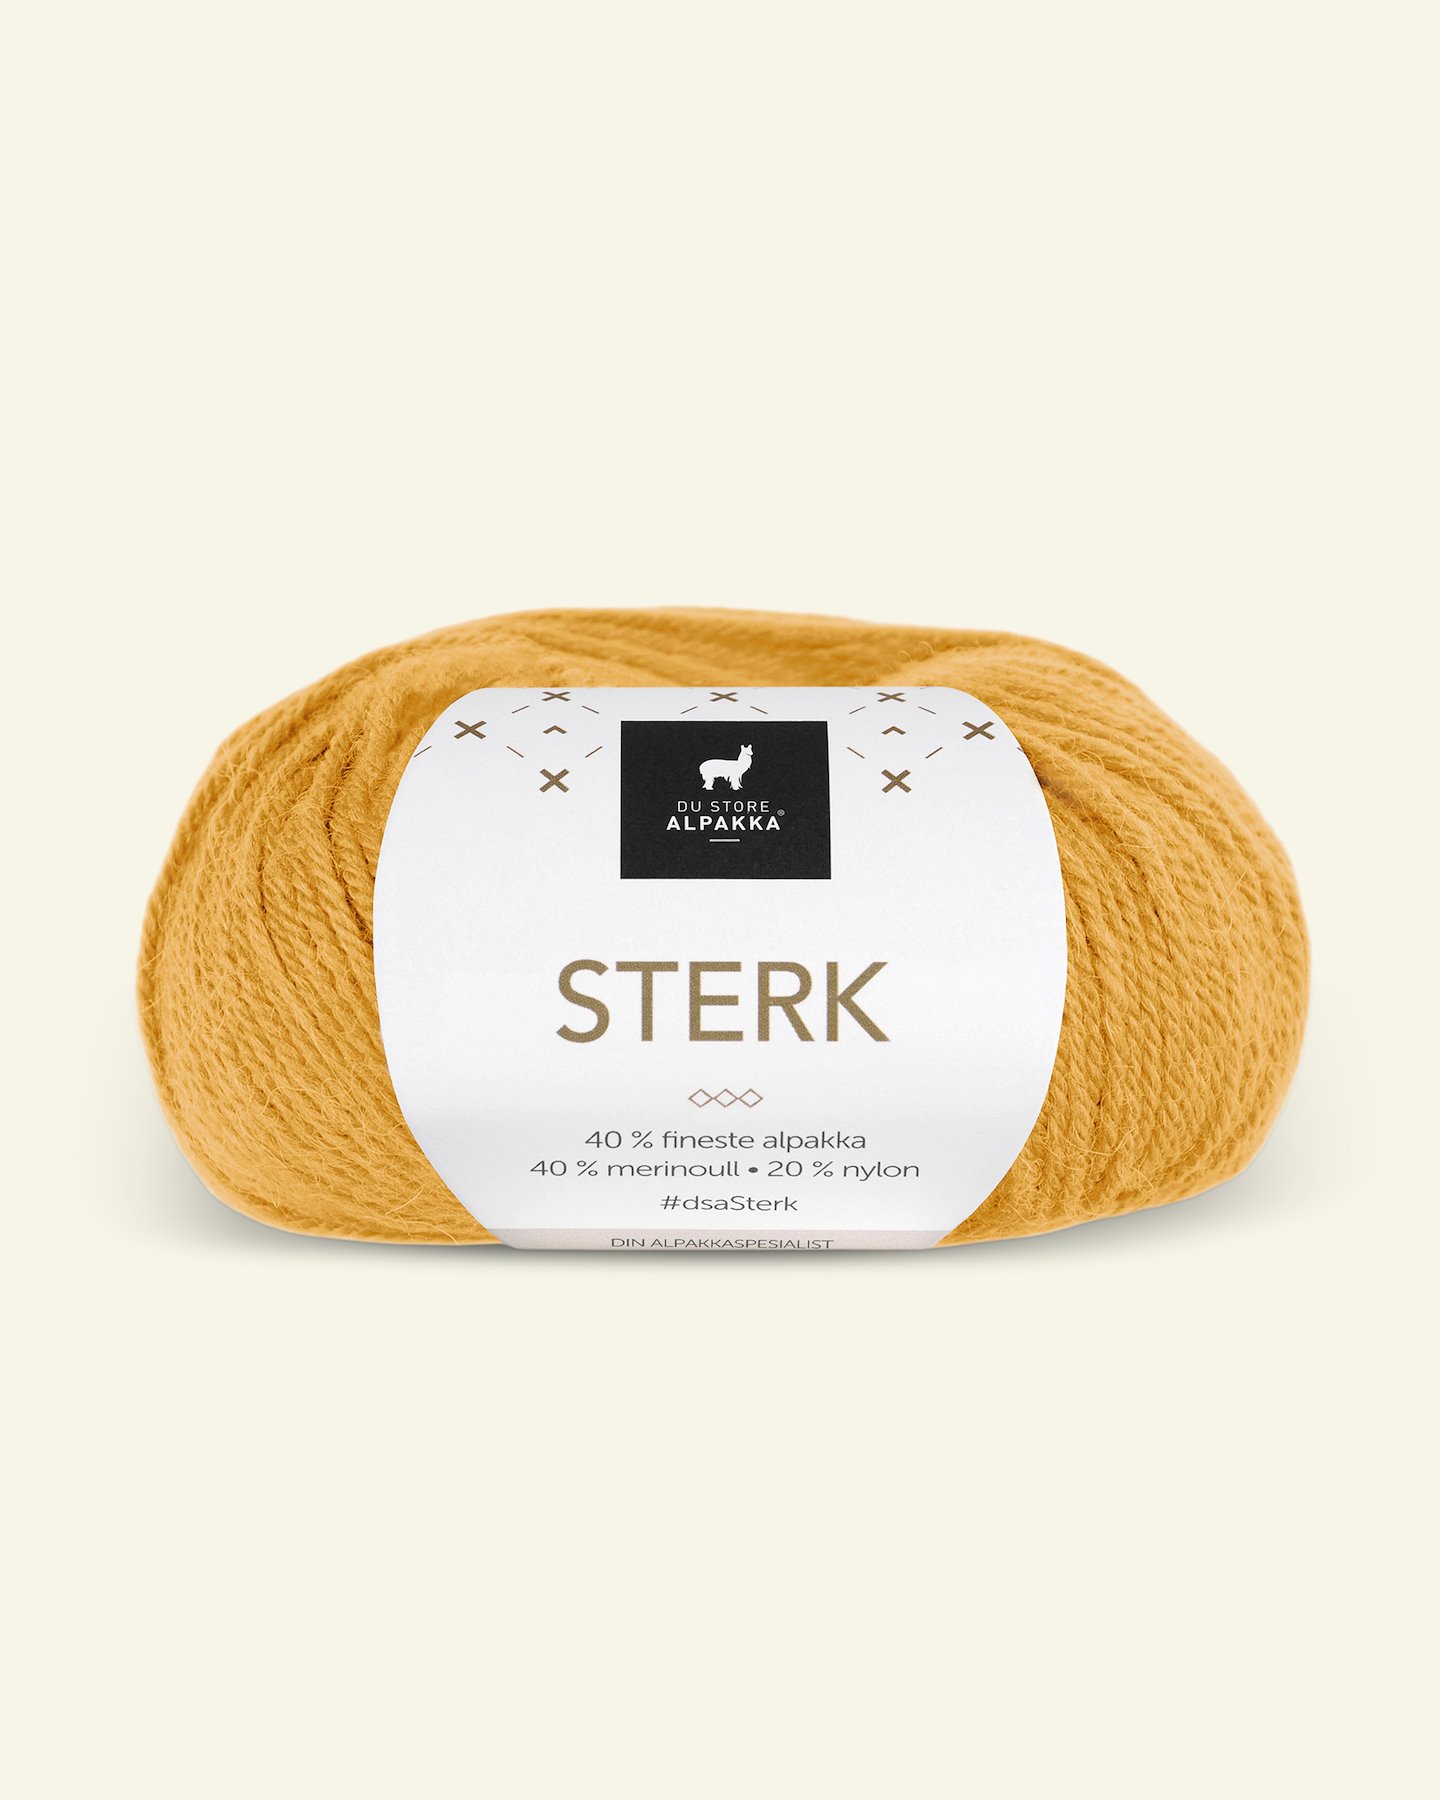 Du Store Alpakka, alpaca merino mixed yarn "Sterk", warm yellow (855) 90000679_pack